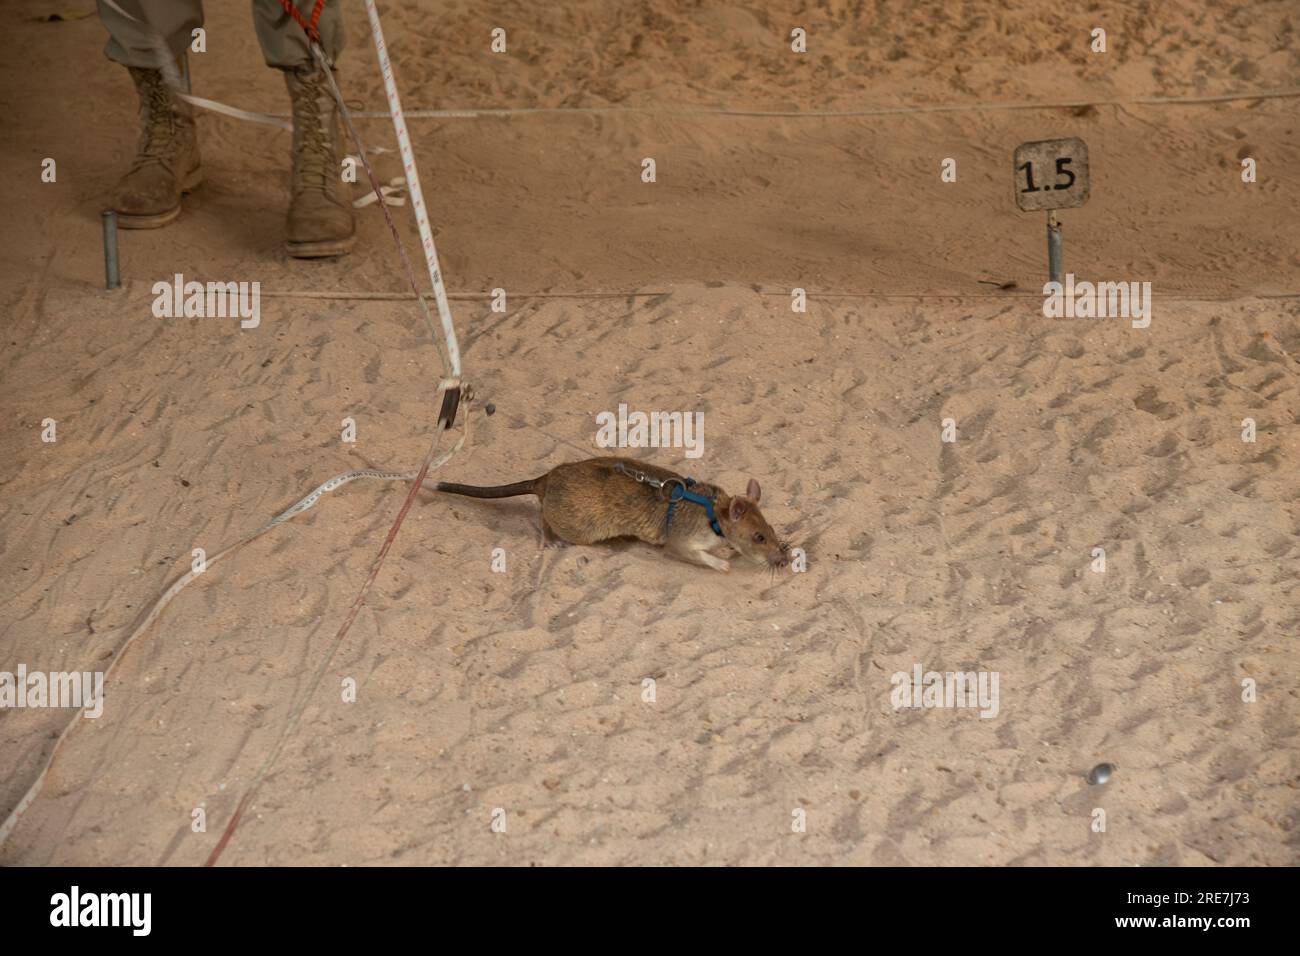 African Giant Land Rat cerca l'area delle miniere, il centro di sminamento APOPO utilizza i ratti di rilevamento per velocizzare lo sminamento, Siem Reap, Cambogia Foto Stock